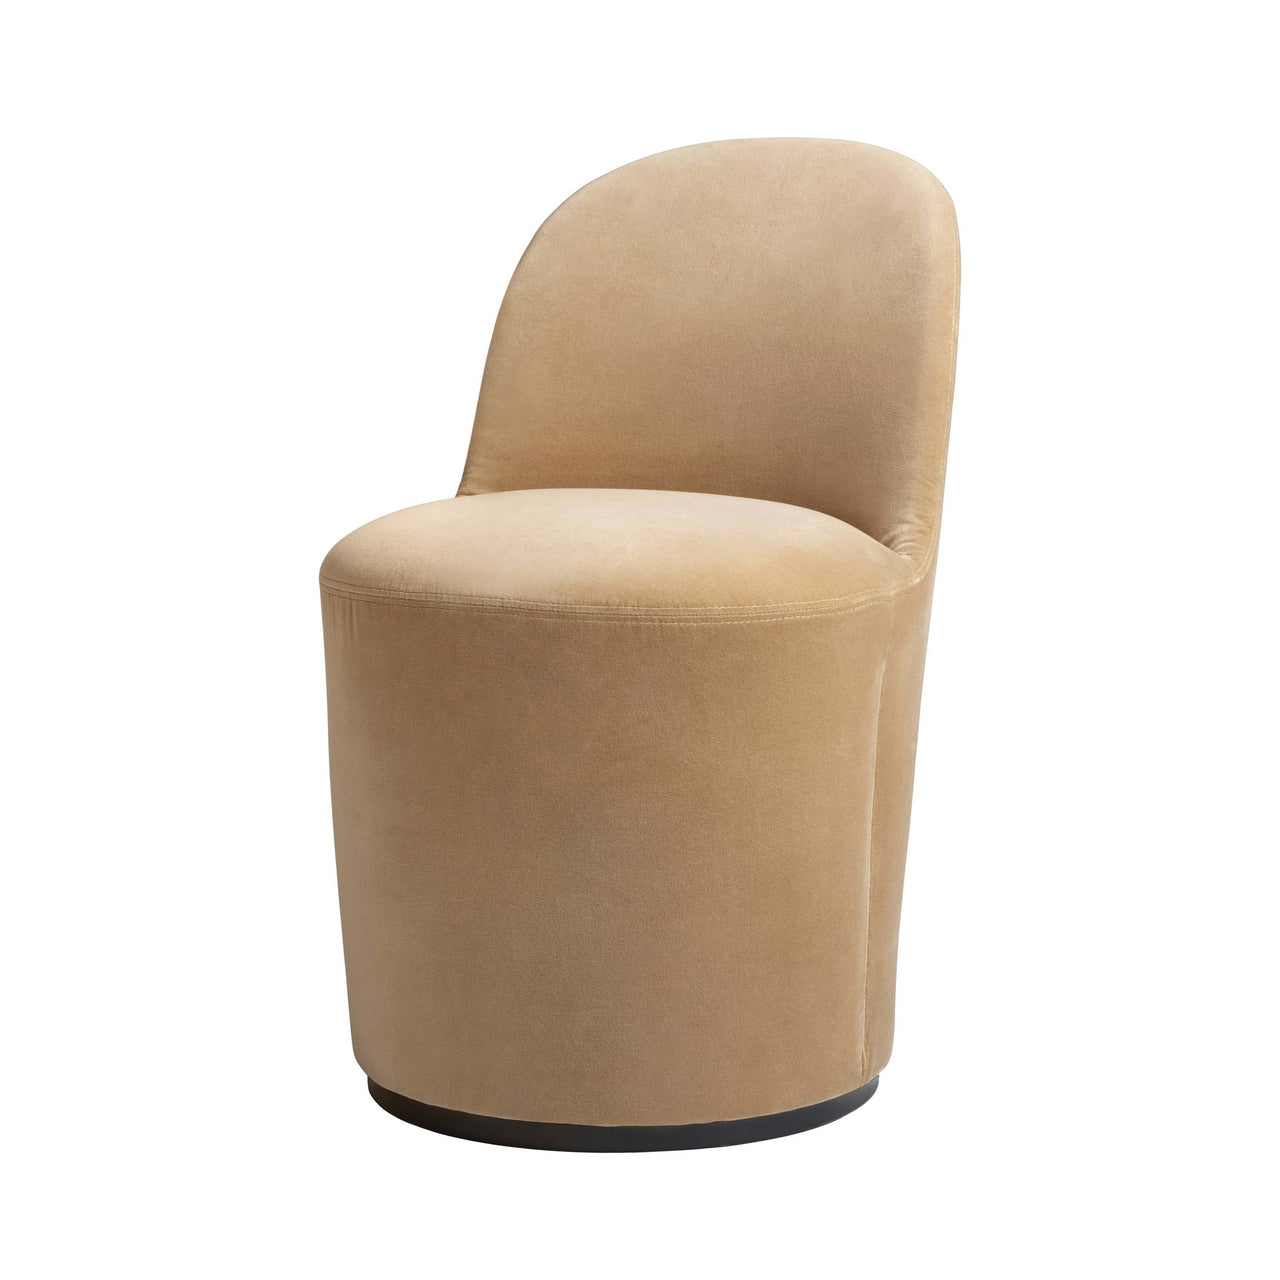 Tail Dining Chair: High Back + Fully Upholstered + Black Semi Matt